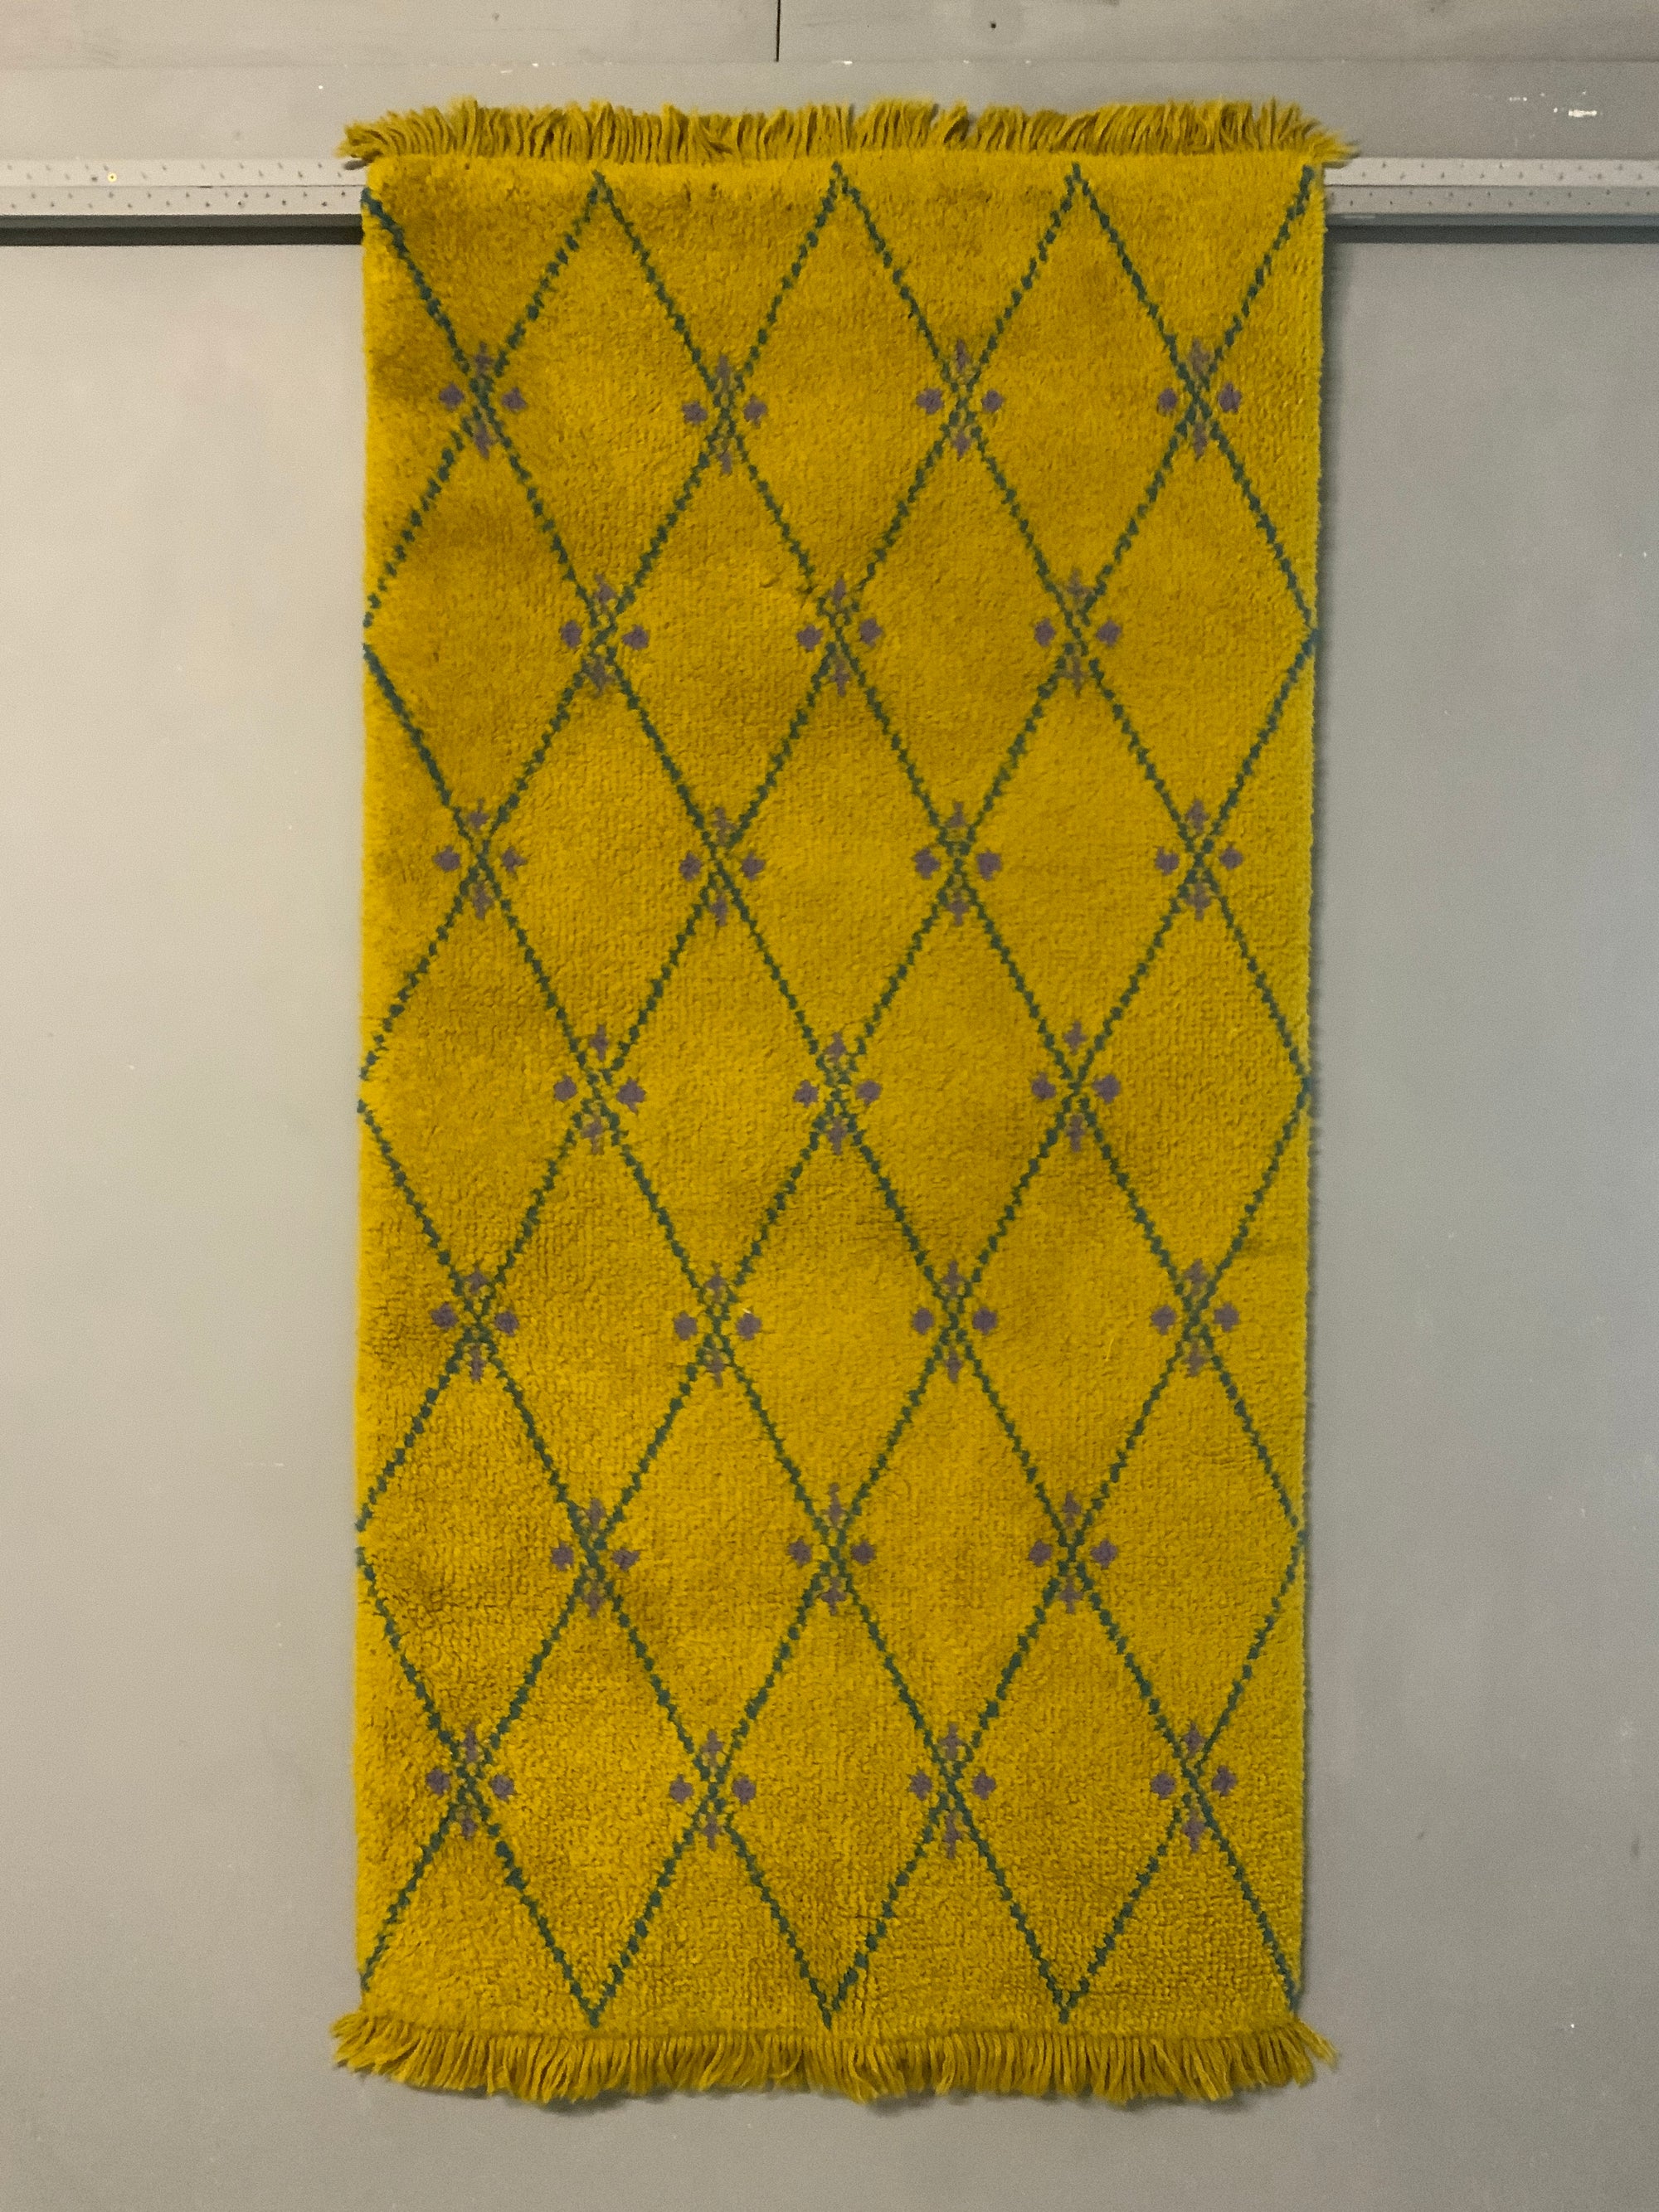 British Readicut rugs (181 x 93cm) [2]